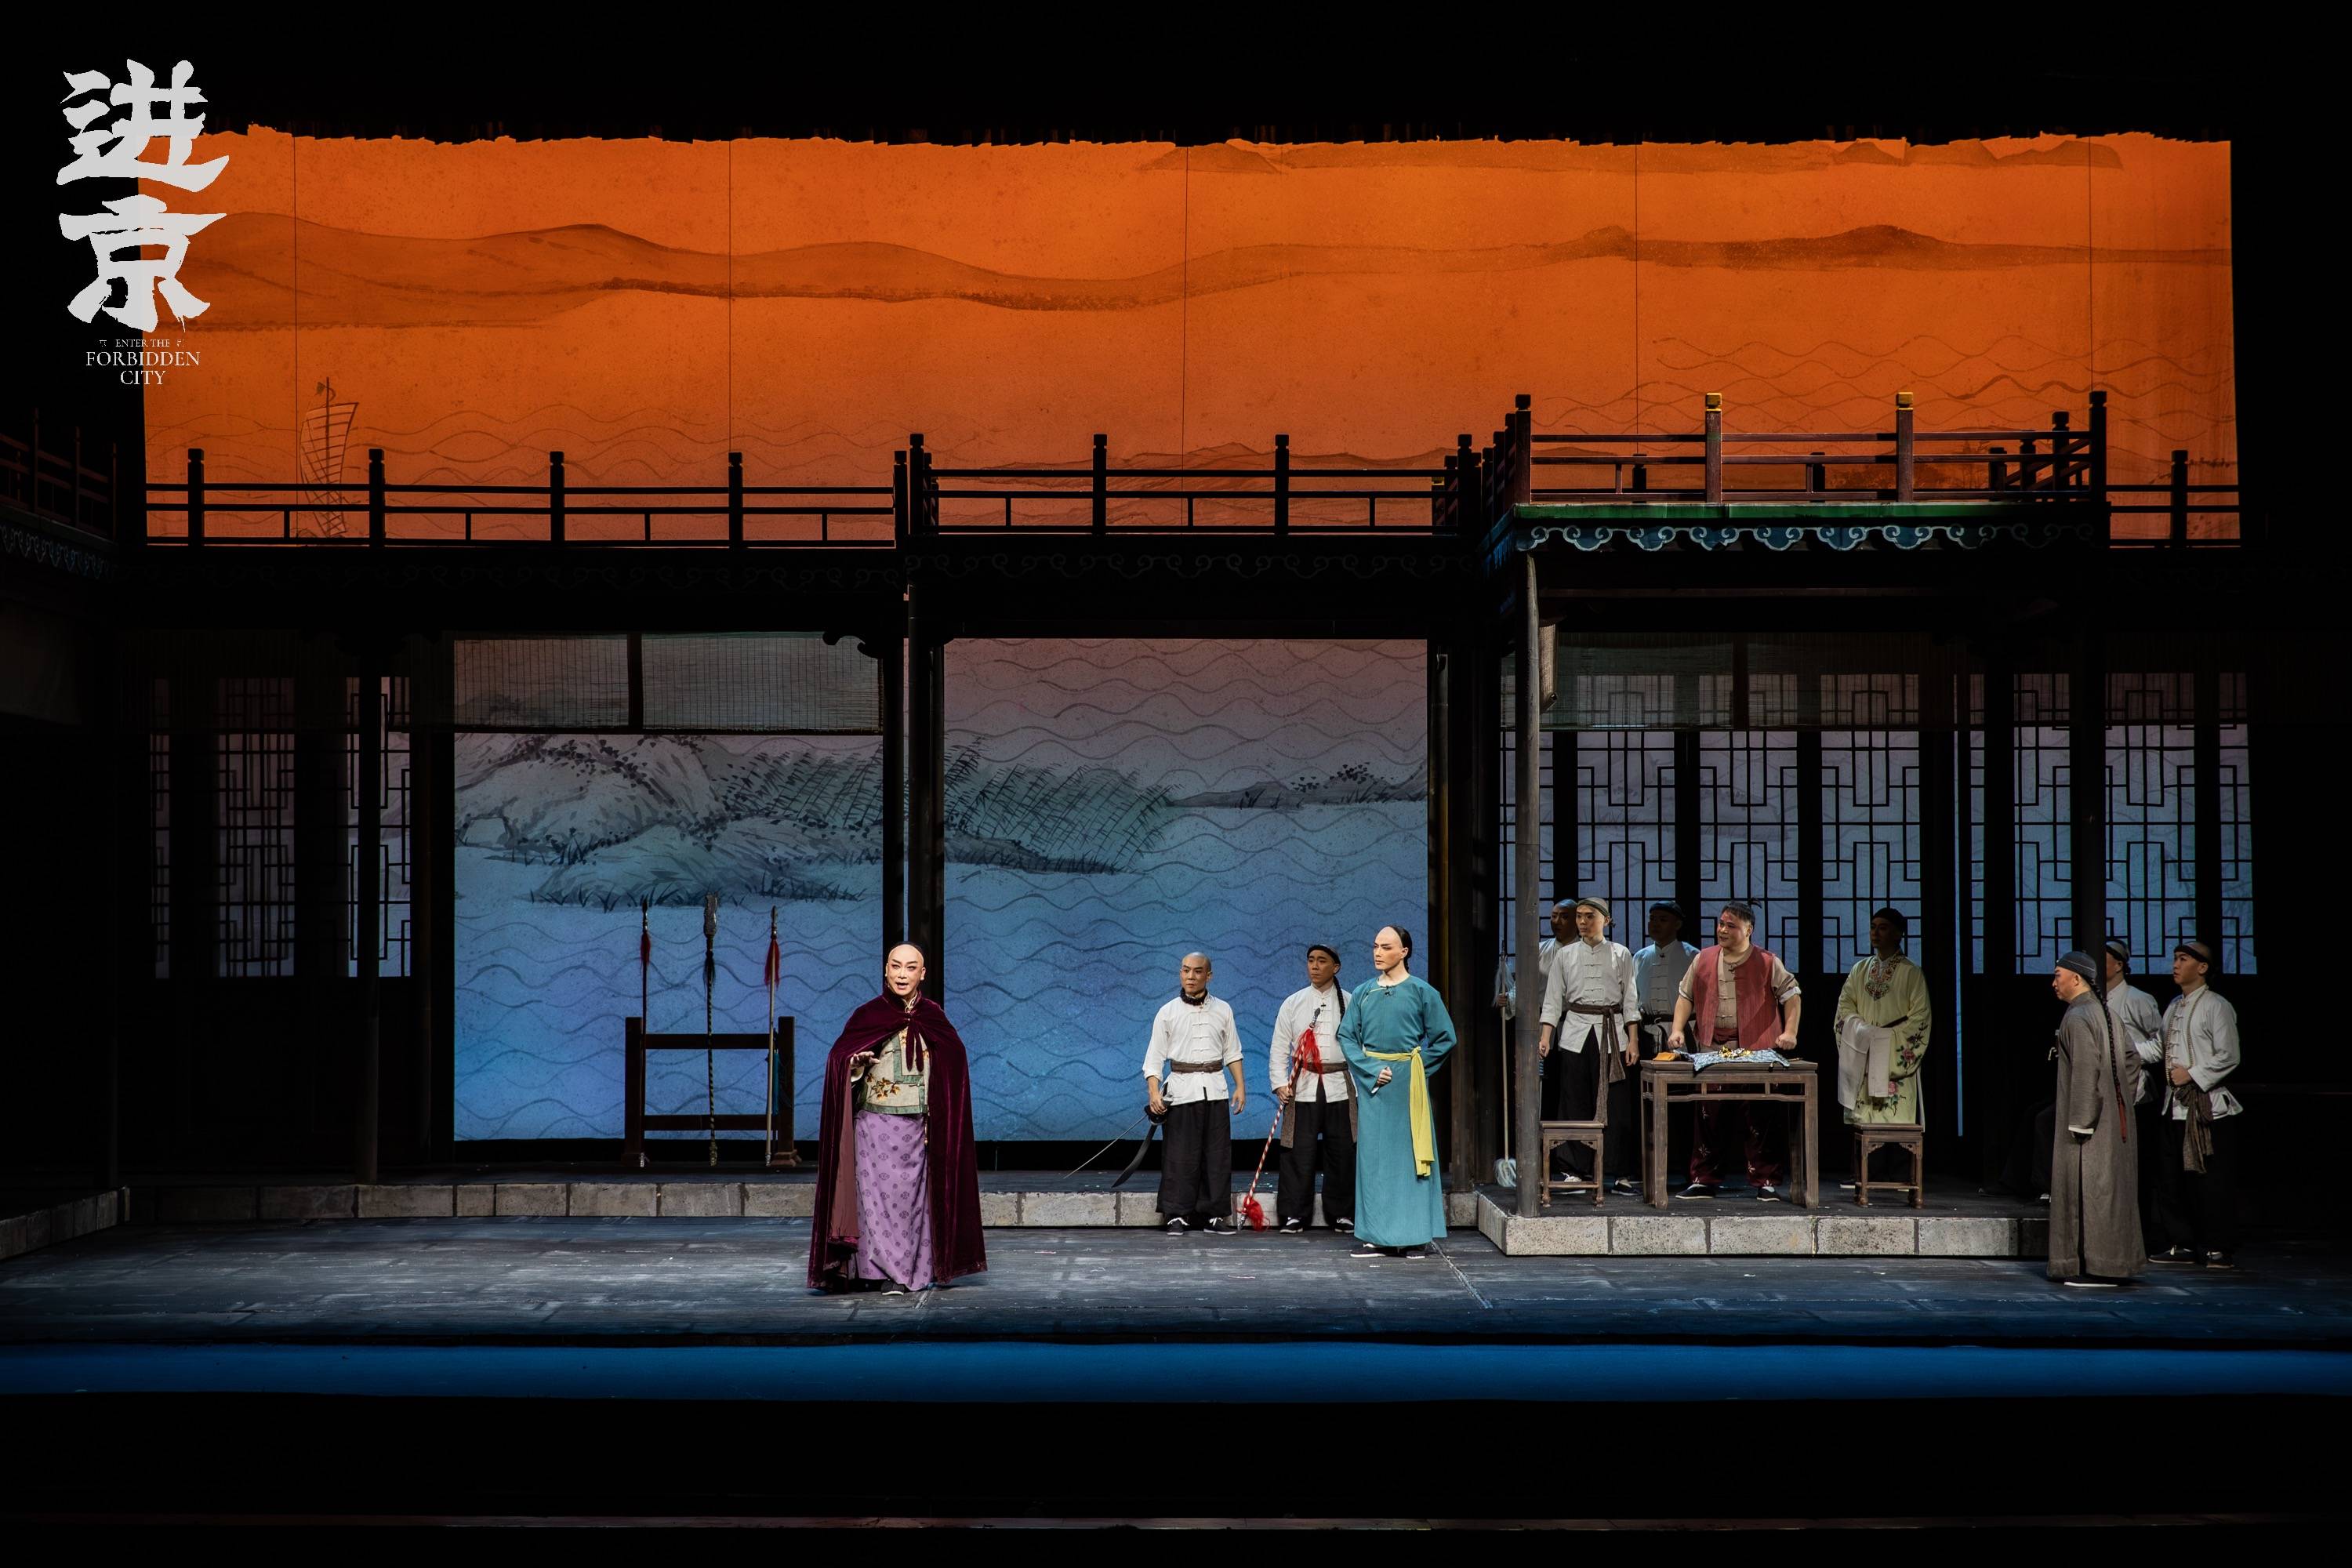 第十届中国京剧节在成都举办,重量级剧目《进京》将惊艳亮相